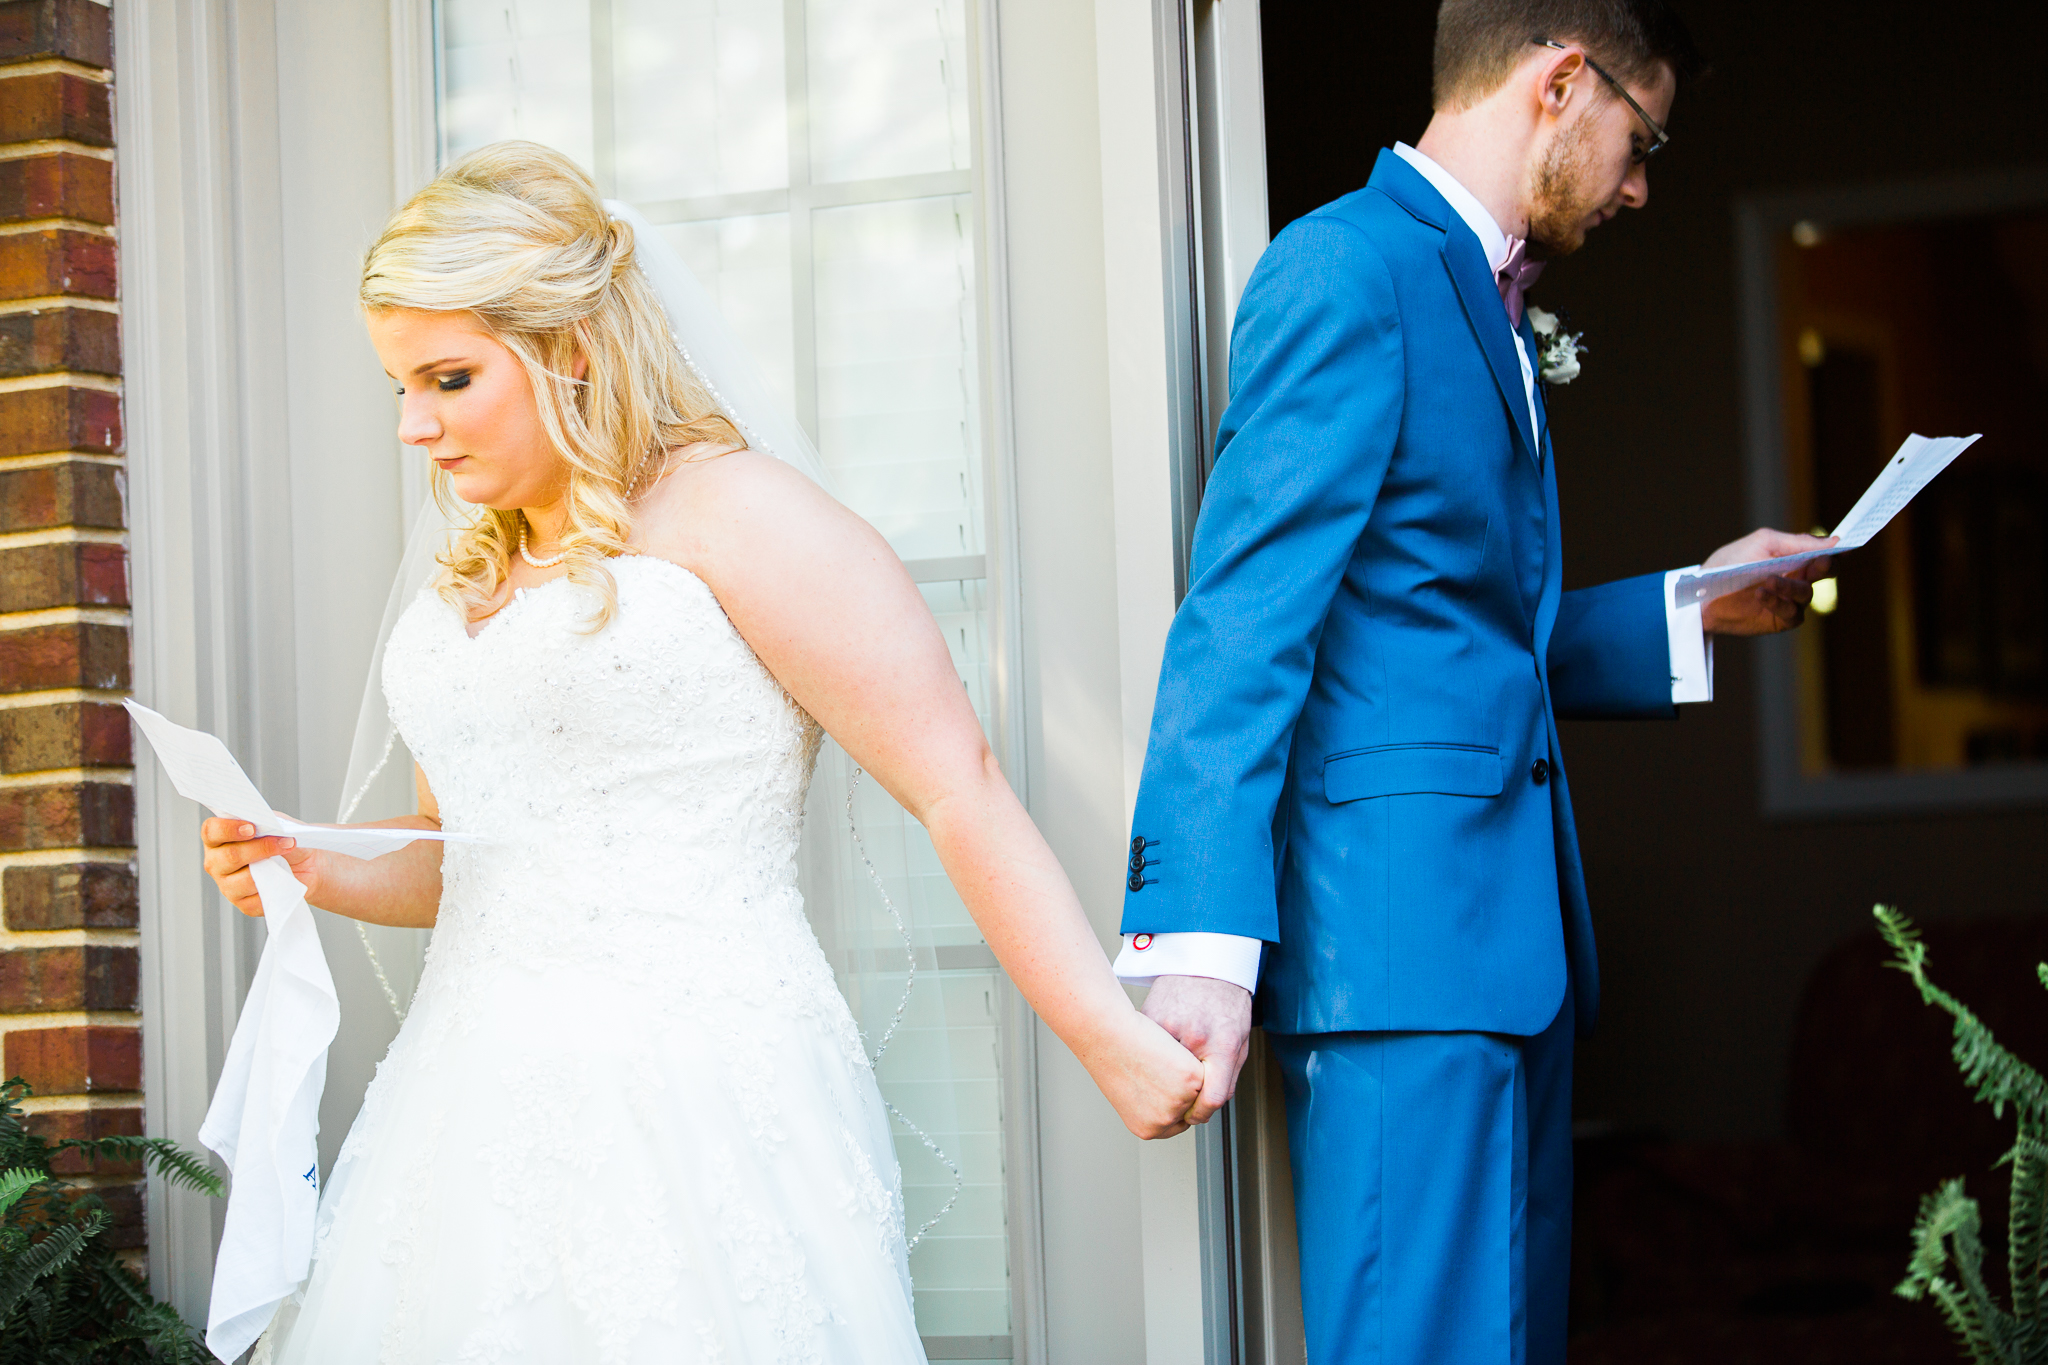 The Overturf Wedding | Backyard Wedding | Cinco de Mayo Wedding | Jonesboro Arkansas Photographer